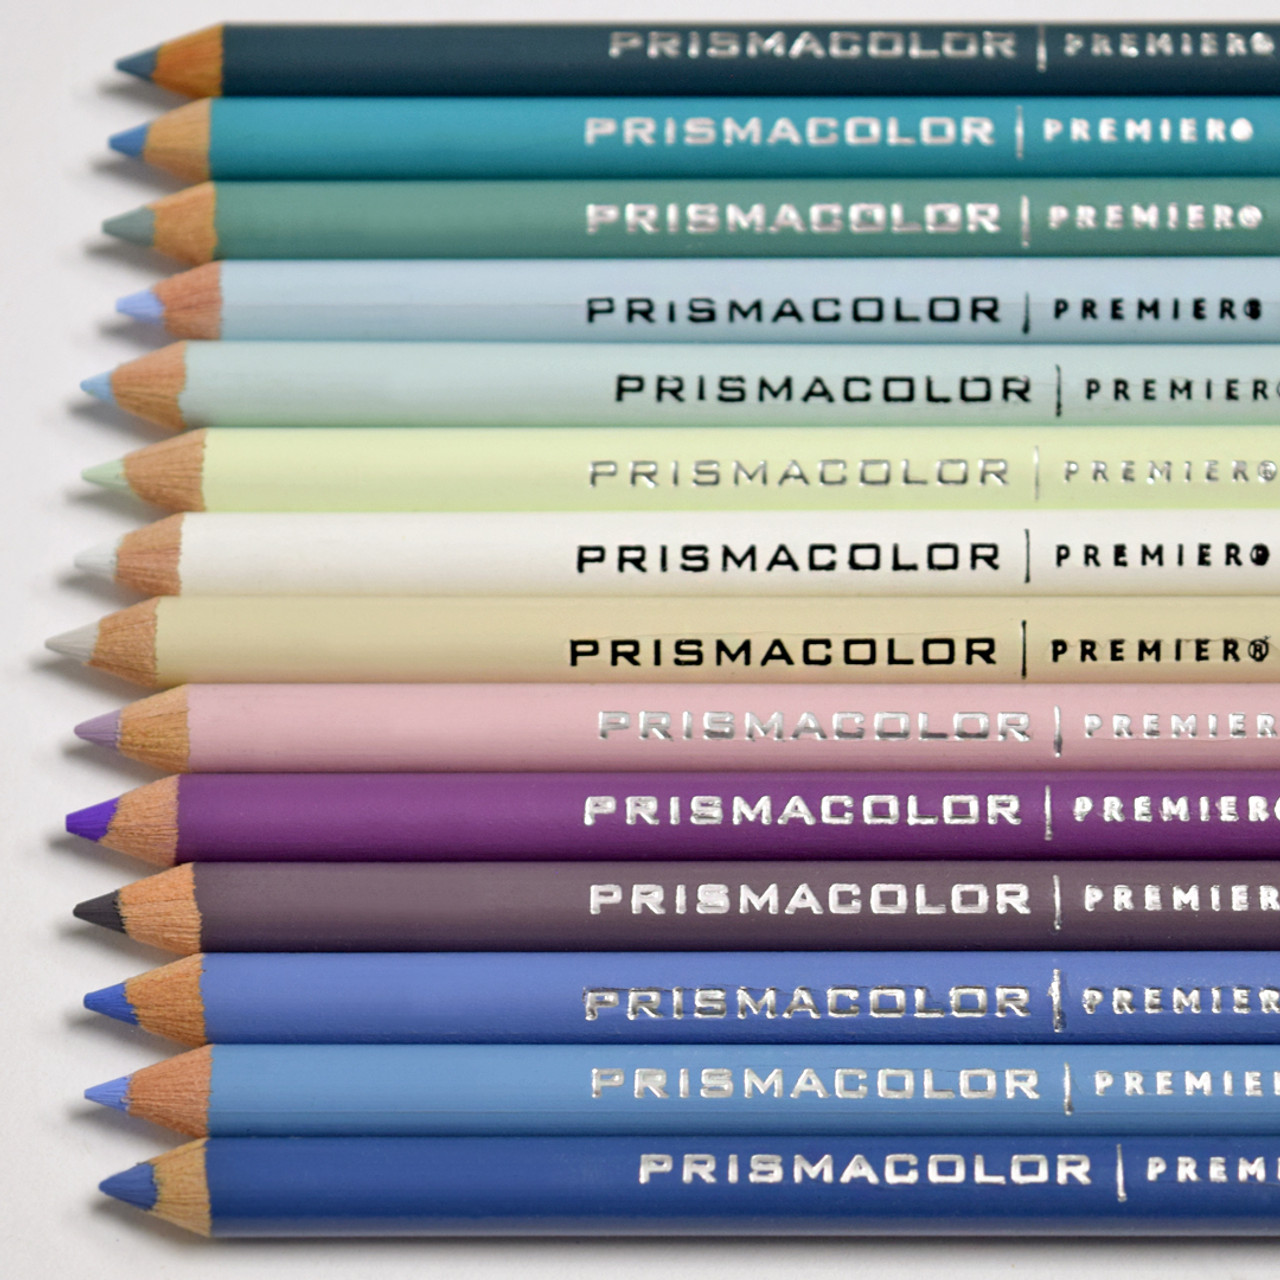 OriginL American Prismacolor Sanfu Oil Colored Pencil Art Set Single  PC1004-1030 Lapices Colores Profesionales Lapis